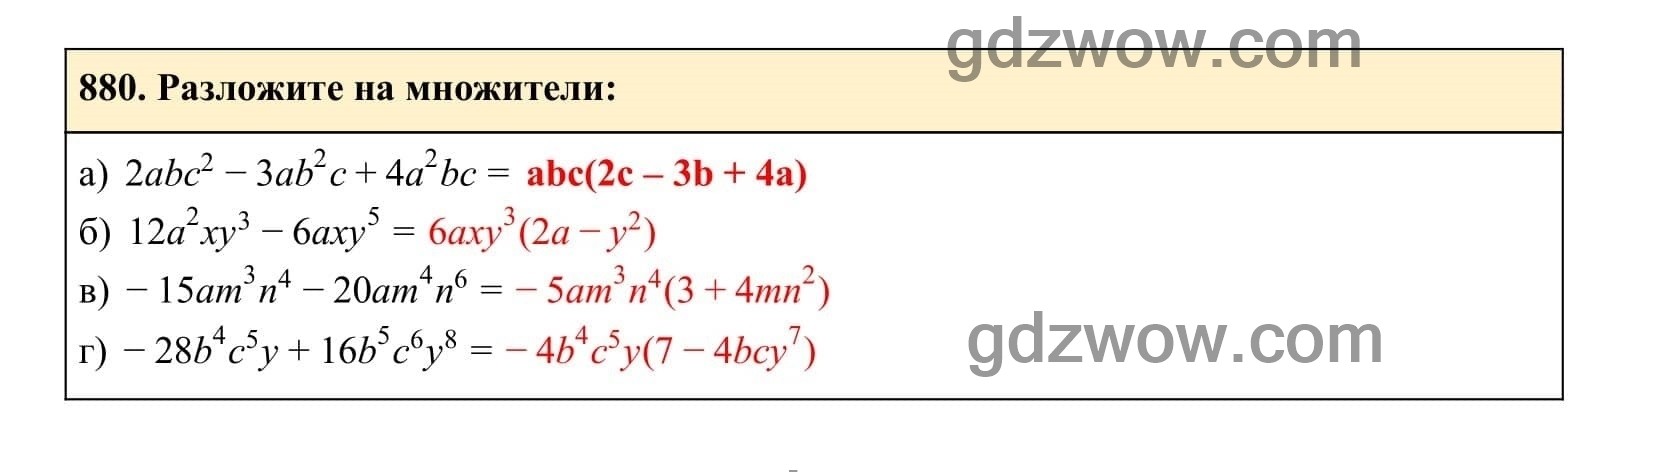 Упражнение 880 - ГДЗ по Алгебре 7 класс Учебник Макарычев (решебник) - GDZwow